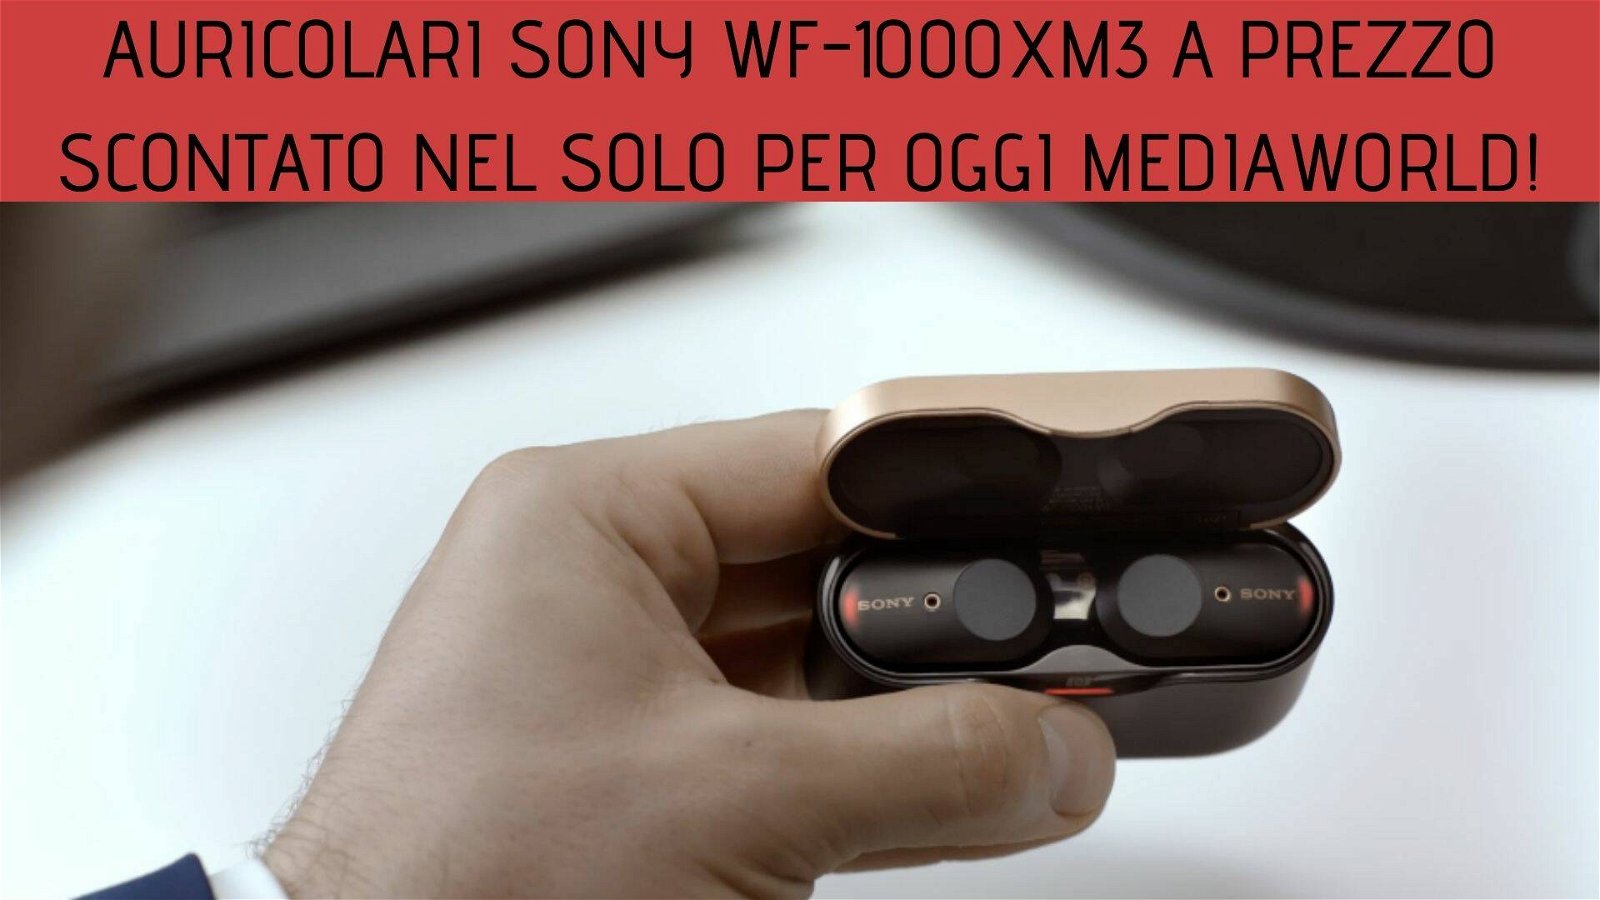 Immagine di Solo per oggi Mediaworld: auricolari Sony WF-1000XM3 ad un prezzo imperdibile!